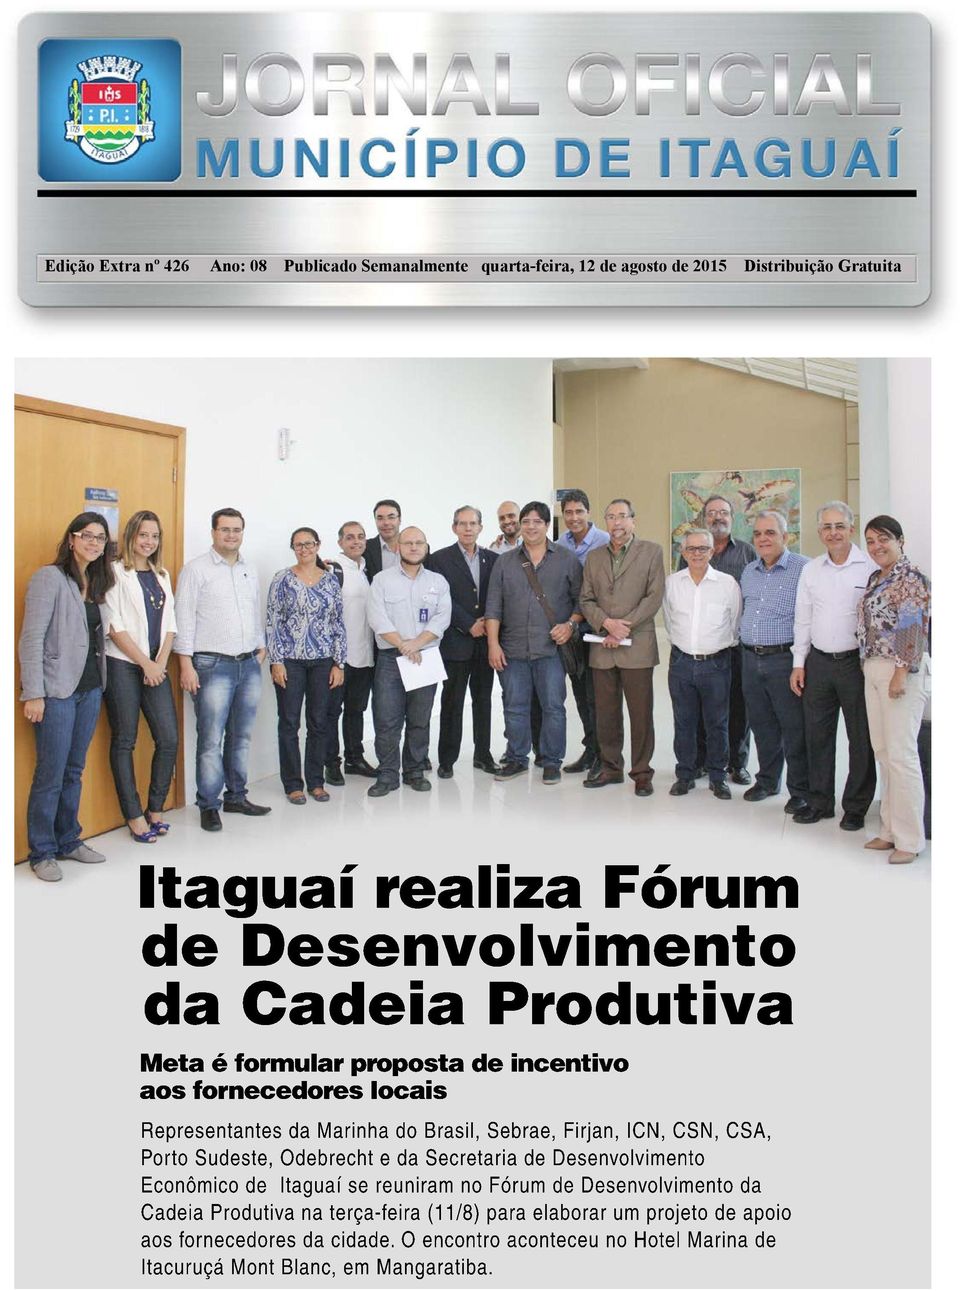 Porto Sudeste, Odebrecht e da Secretaria de Desenvolvimento Econômico de Itaguaí se reuniram no Fórum de Desenvolvimento da Cadeia Produtiva na